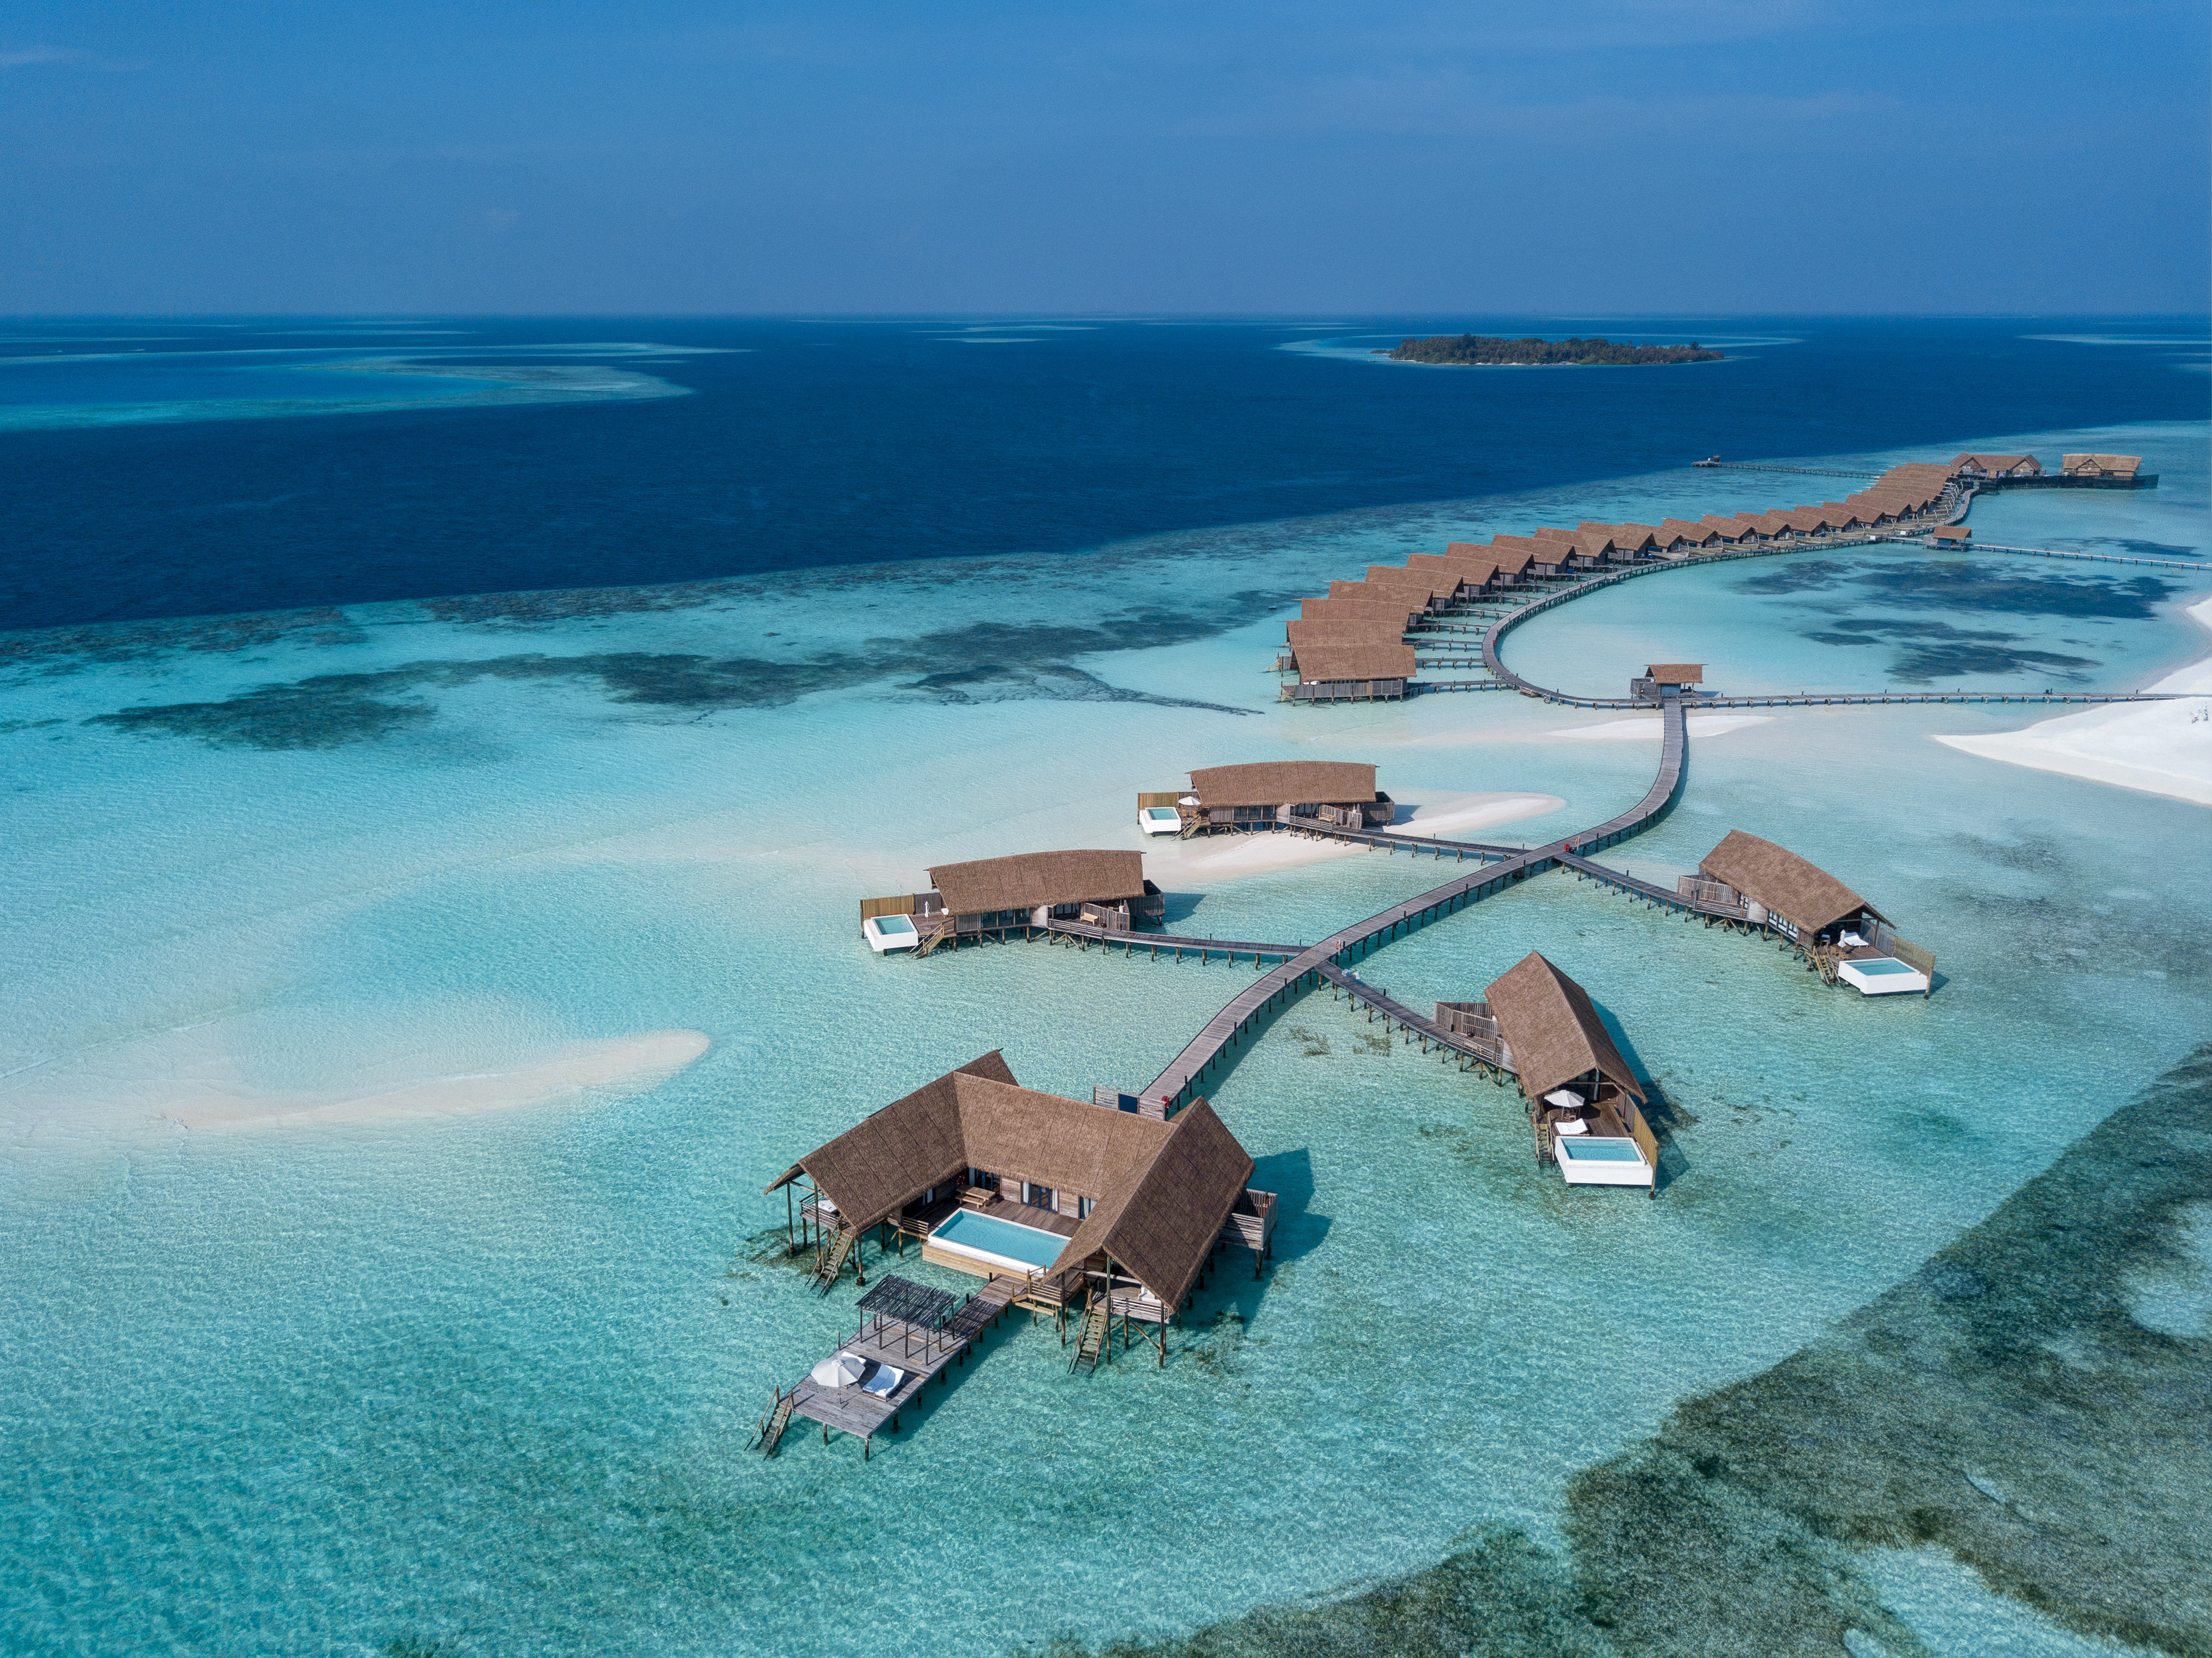 Fotografie cu Como Resort Island - locul popular printre cunoscătorii de relaxare